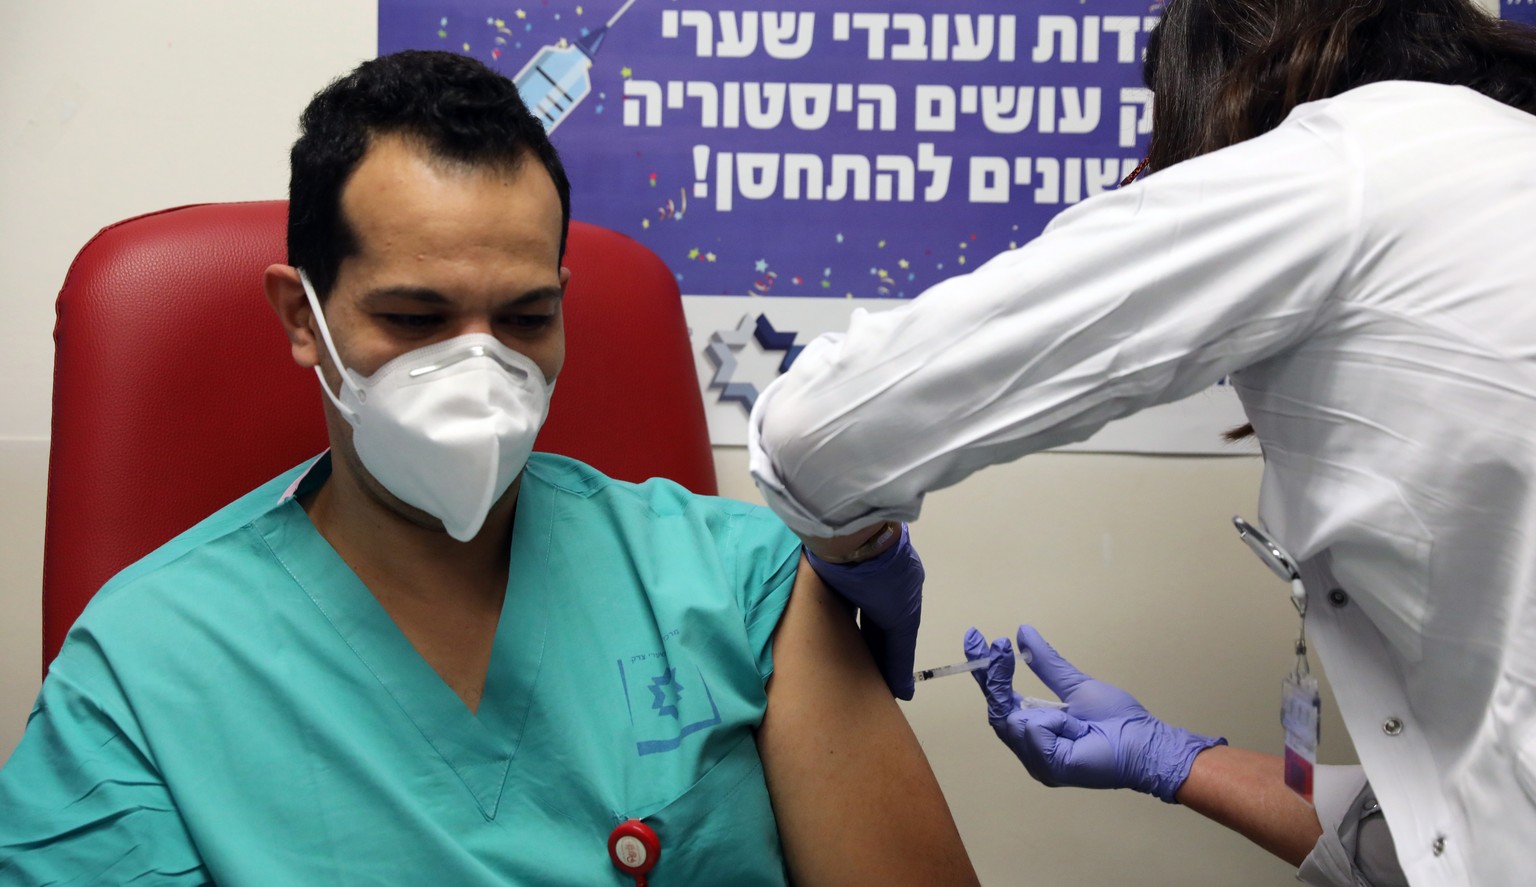 Es wird weiterhin fleissig geimpft in Israel. Langsam zeigen sich die Erfolge auch bei jüngeren Altersgruppen.